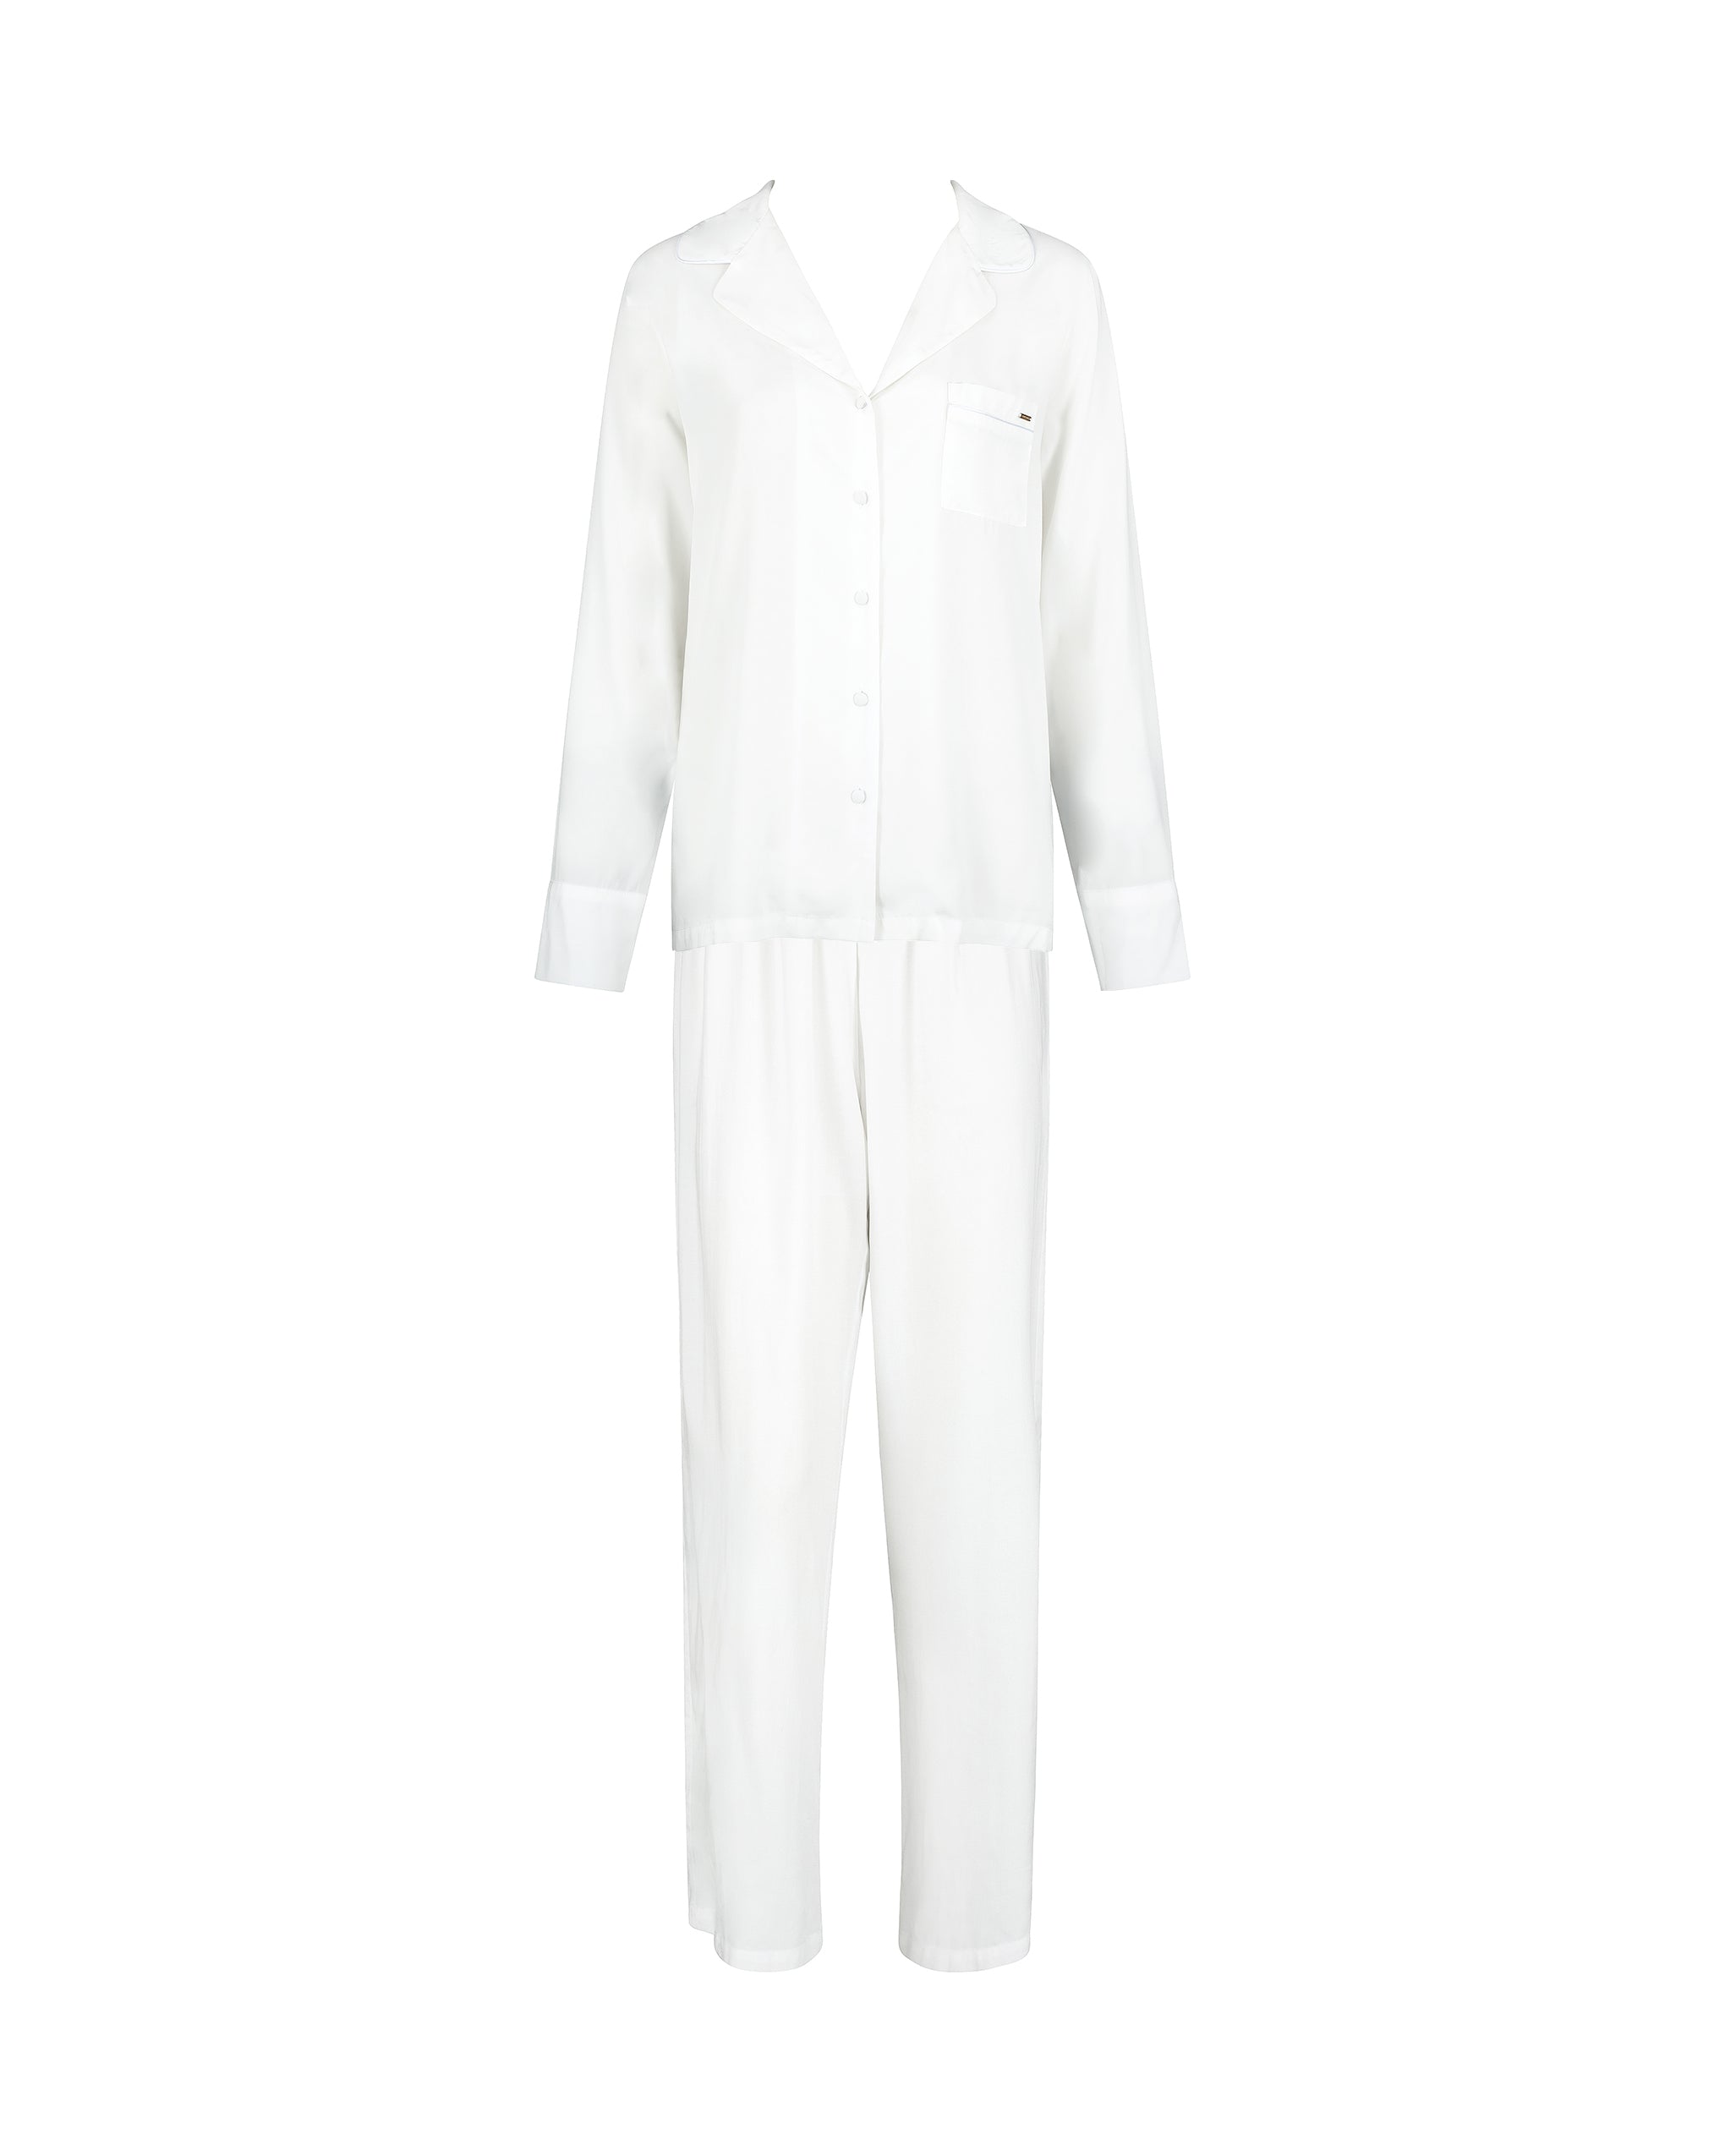 bluebella tarcon pyjama long en viscose écologique blanc